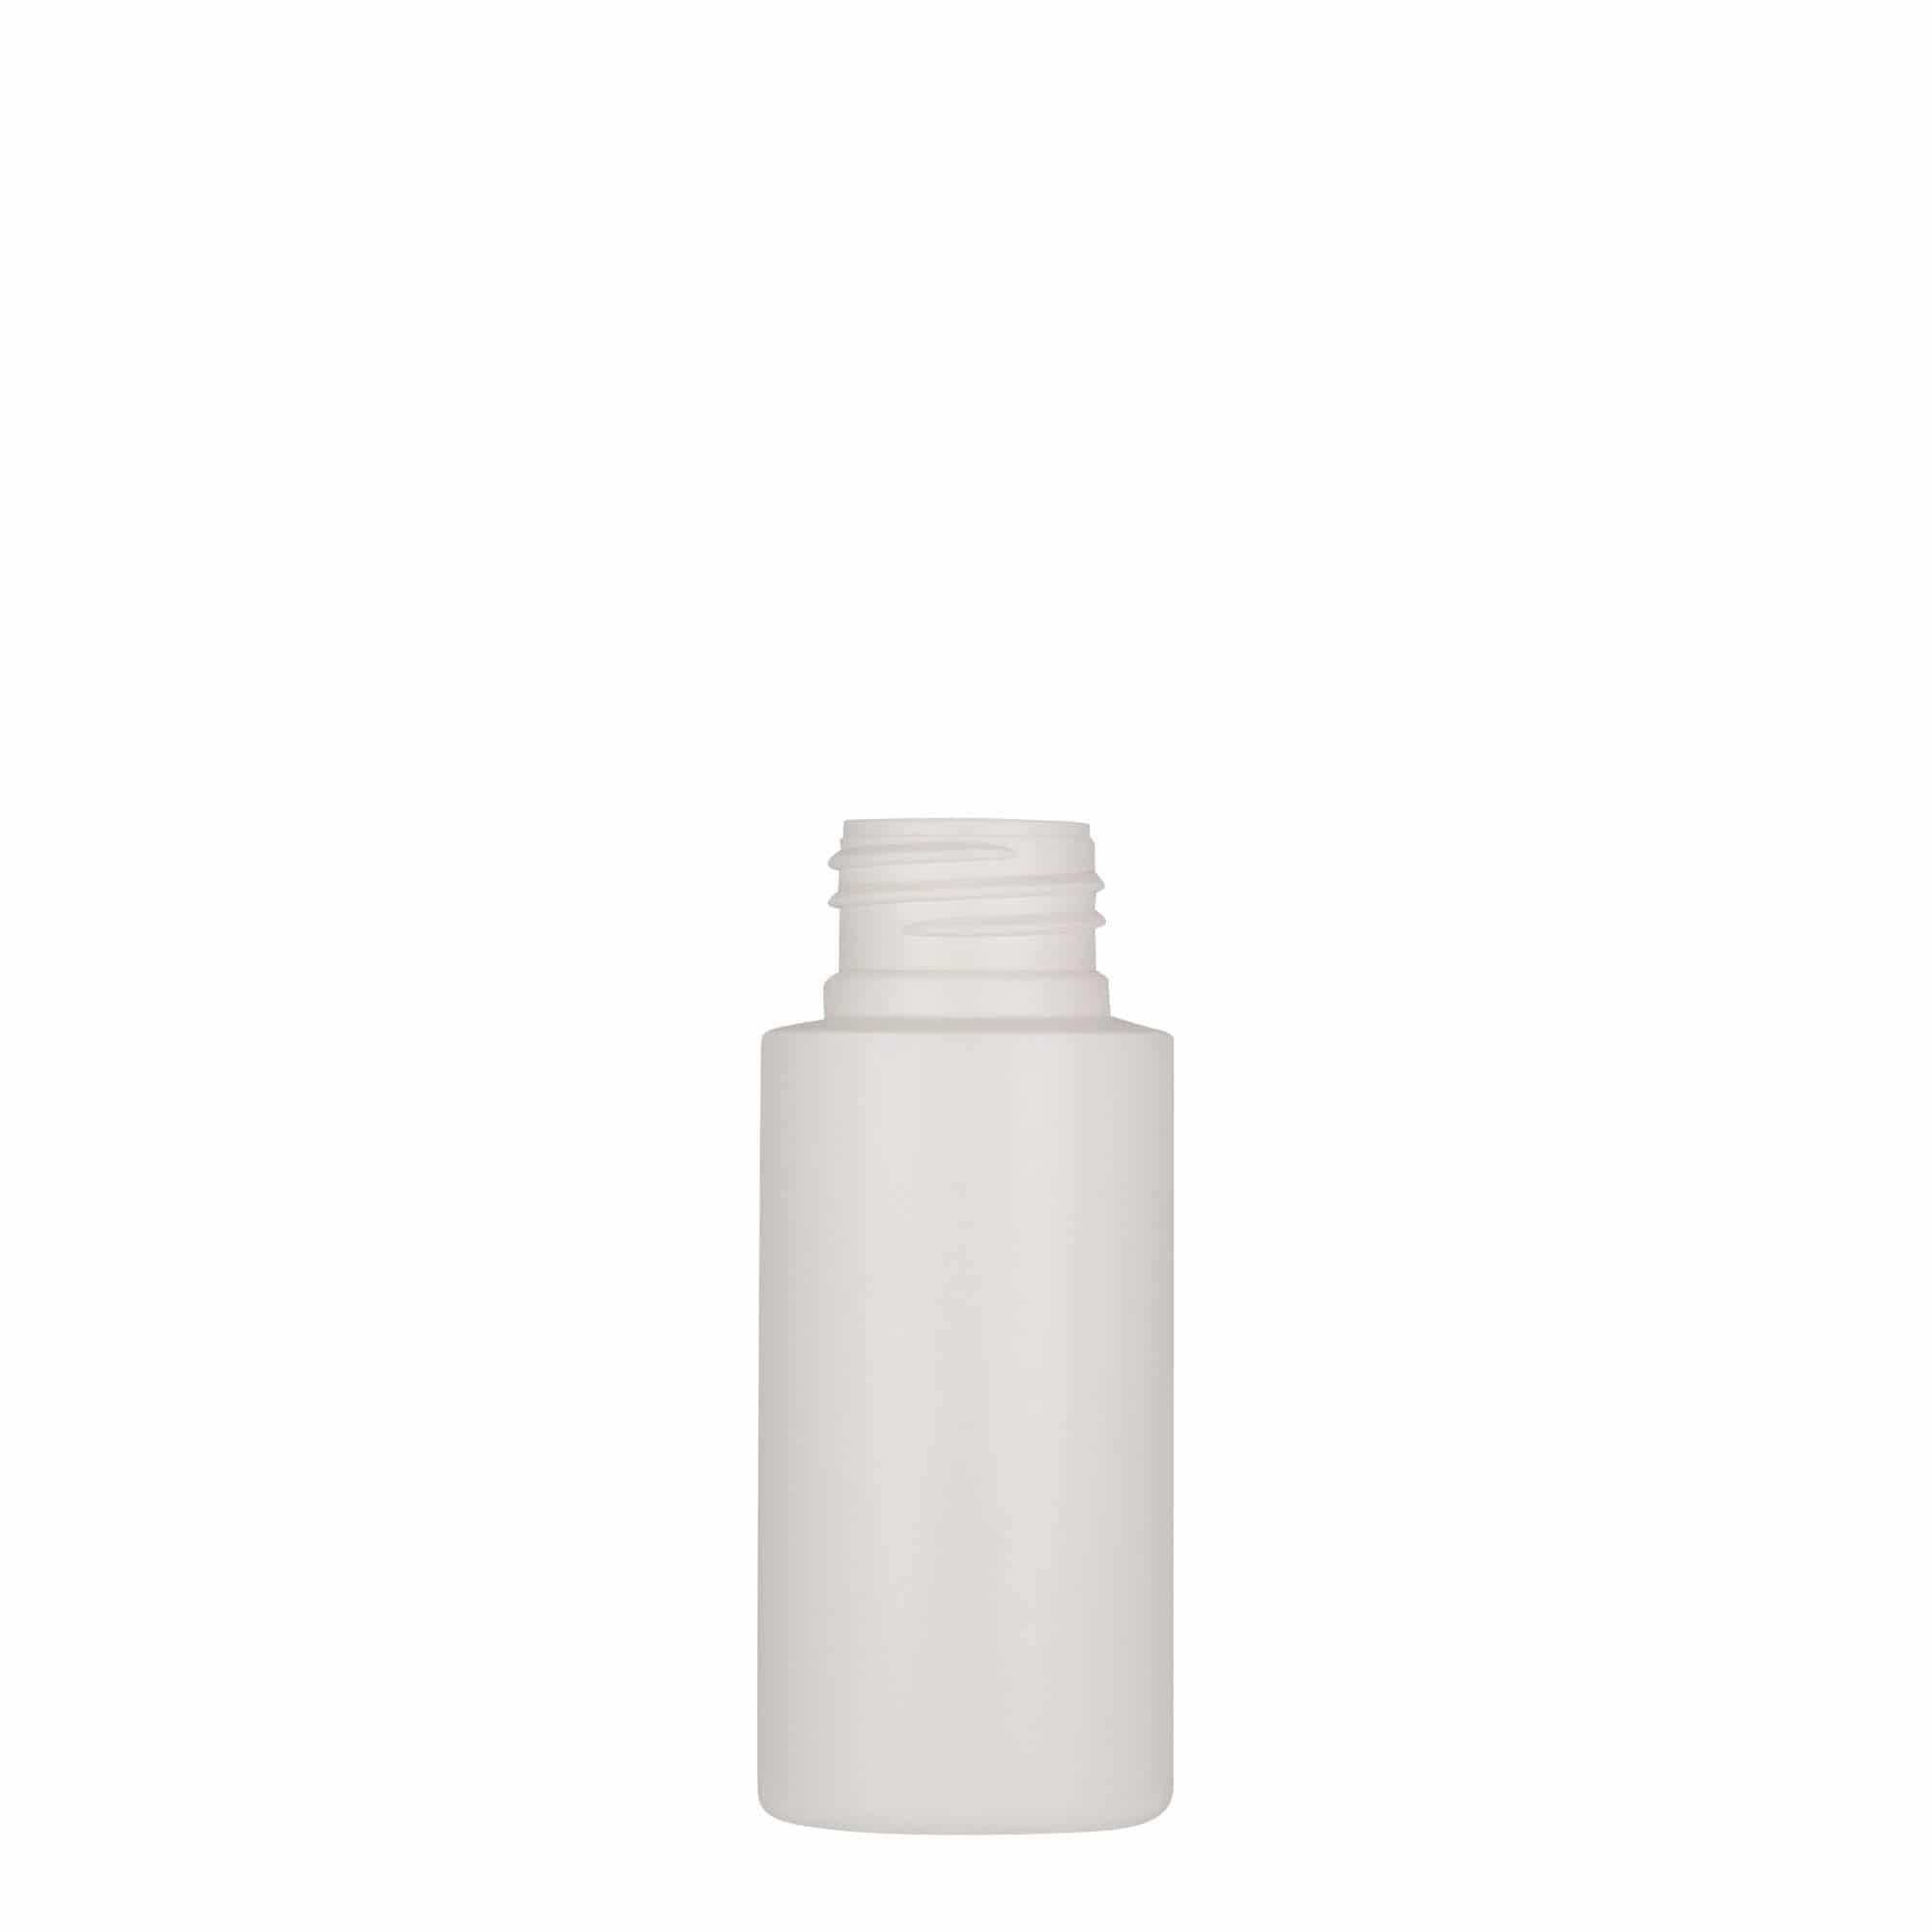 50 ml butelka z tworzywa sztucznego 'Pipe', HDPE, kolor biały, zamknięcie: GPI 24/410